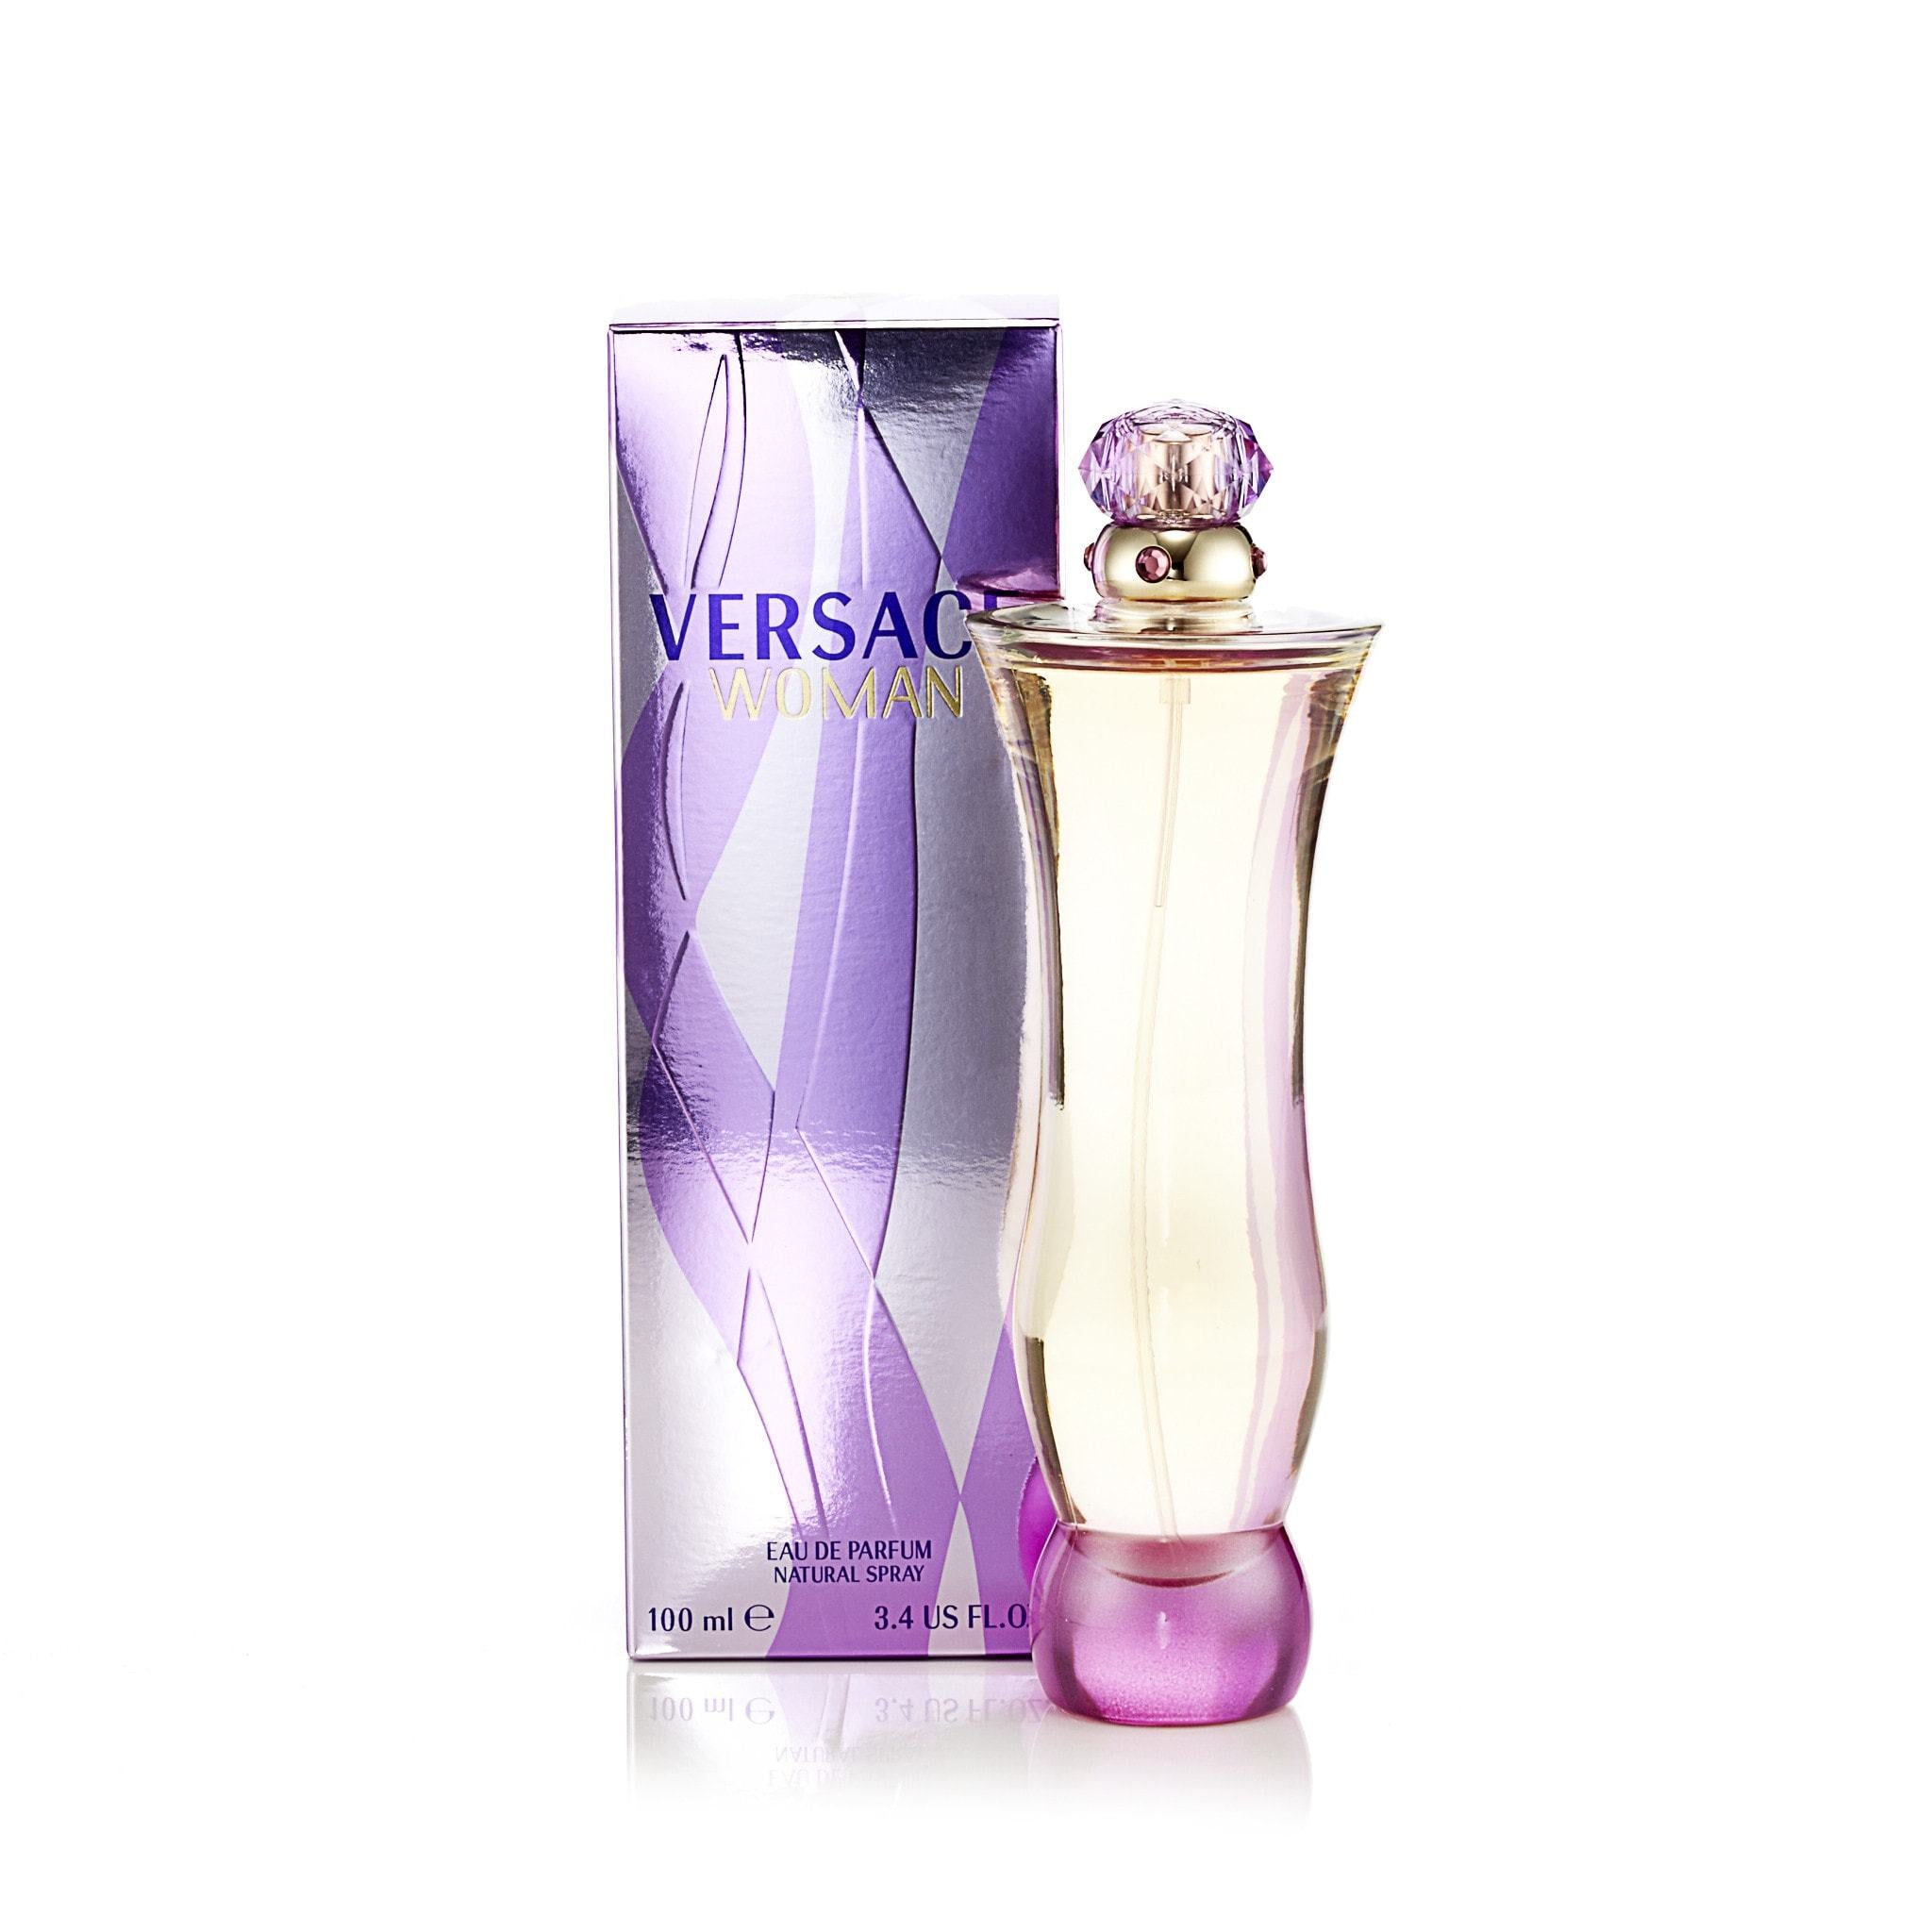 https://perfumania.com/cdn/shop/products/Versace-Versace-Woman-Womens-Eau-de-Parfum-EDP-S-3.4-oz.-Best-Price-Fragrance-Parfume-FragranceOutlet.com-Details.jpg?v=1579125531